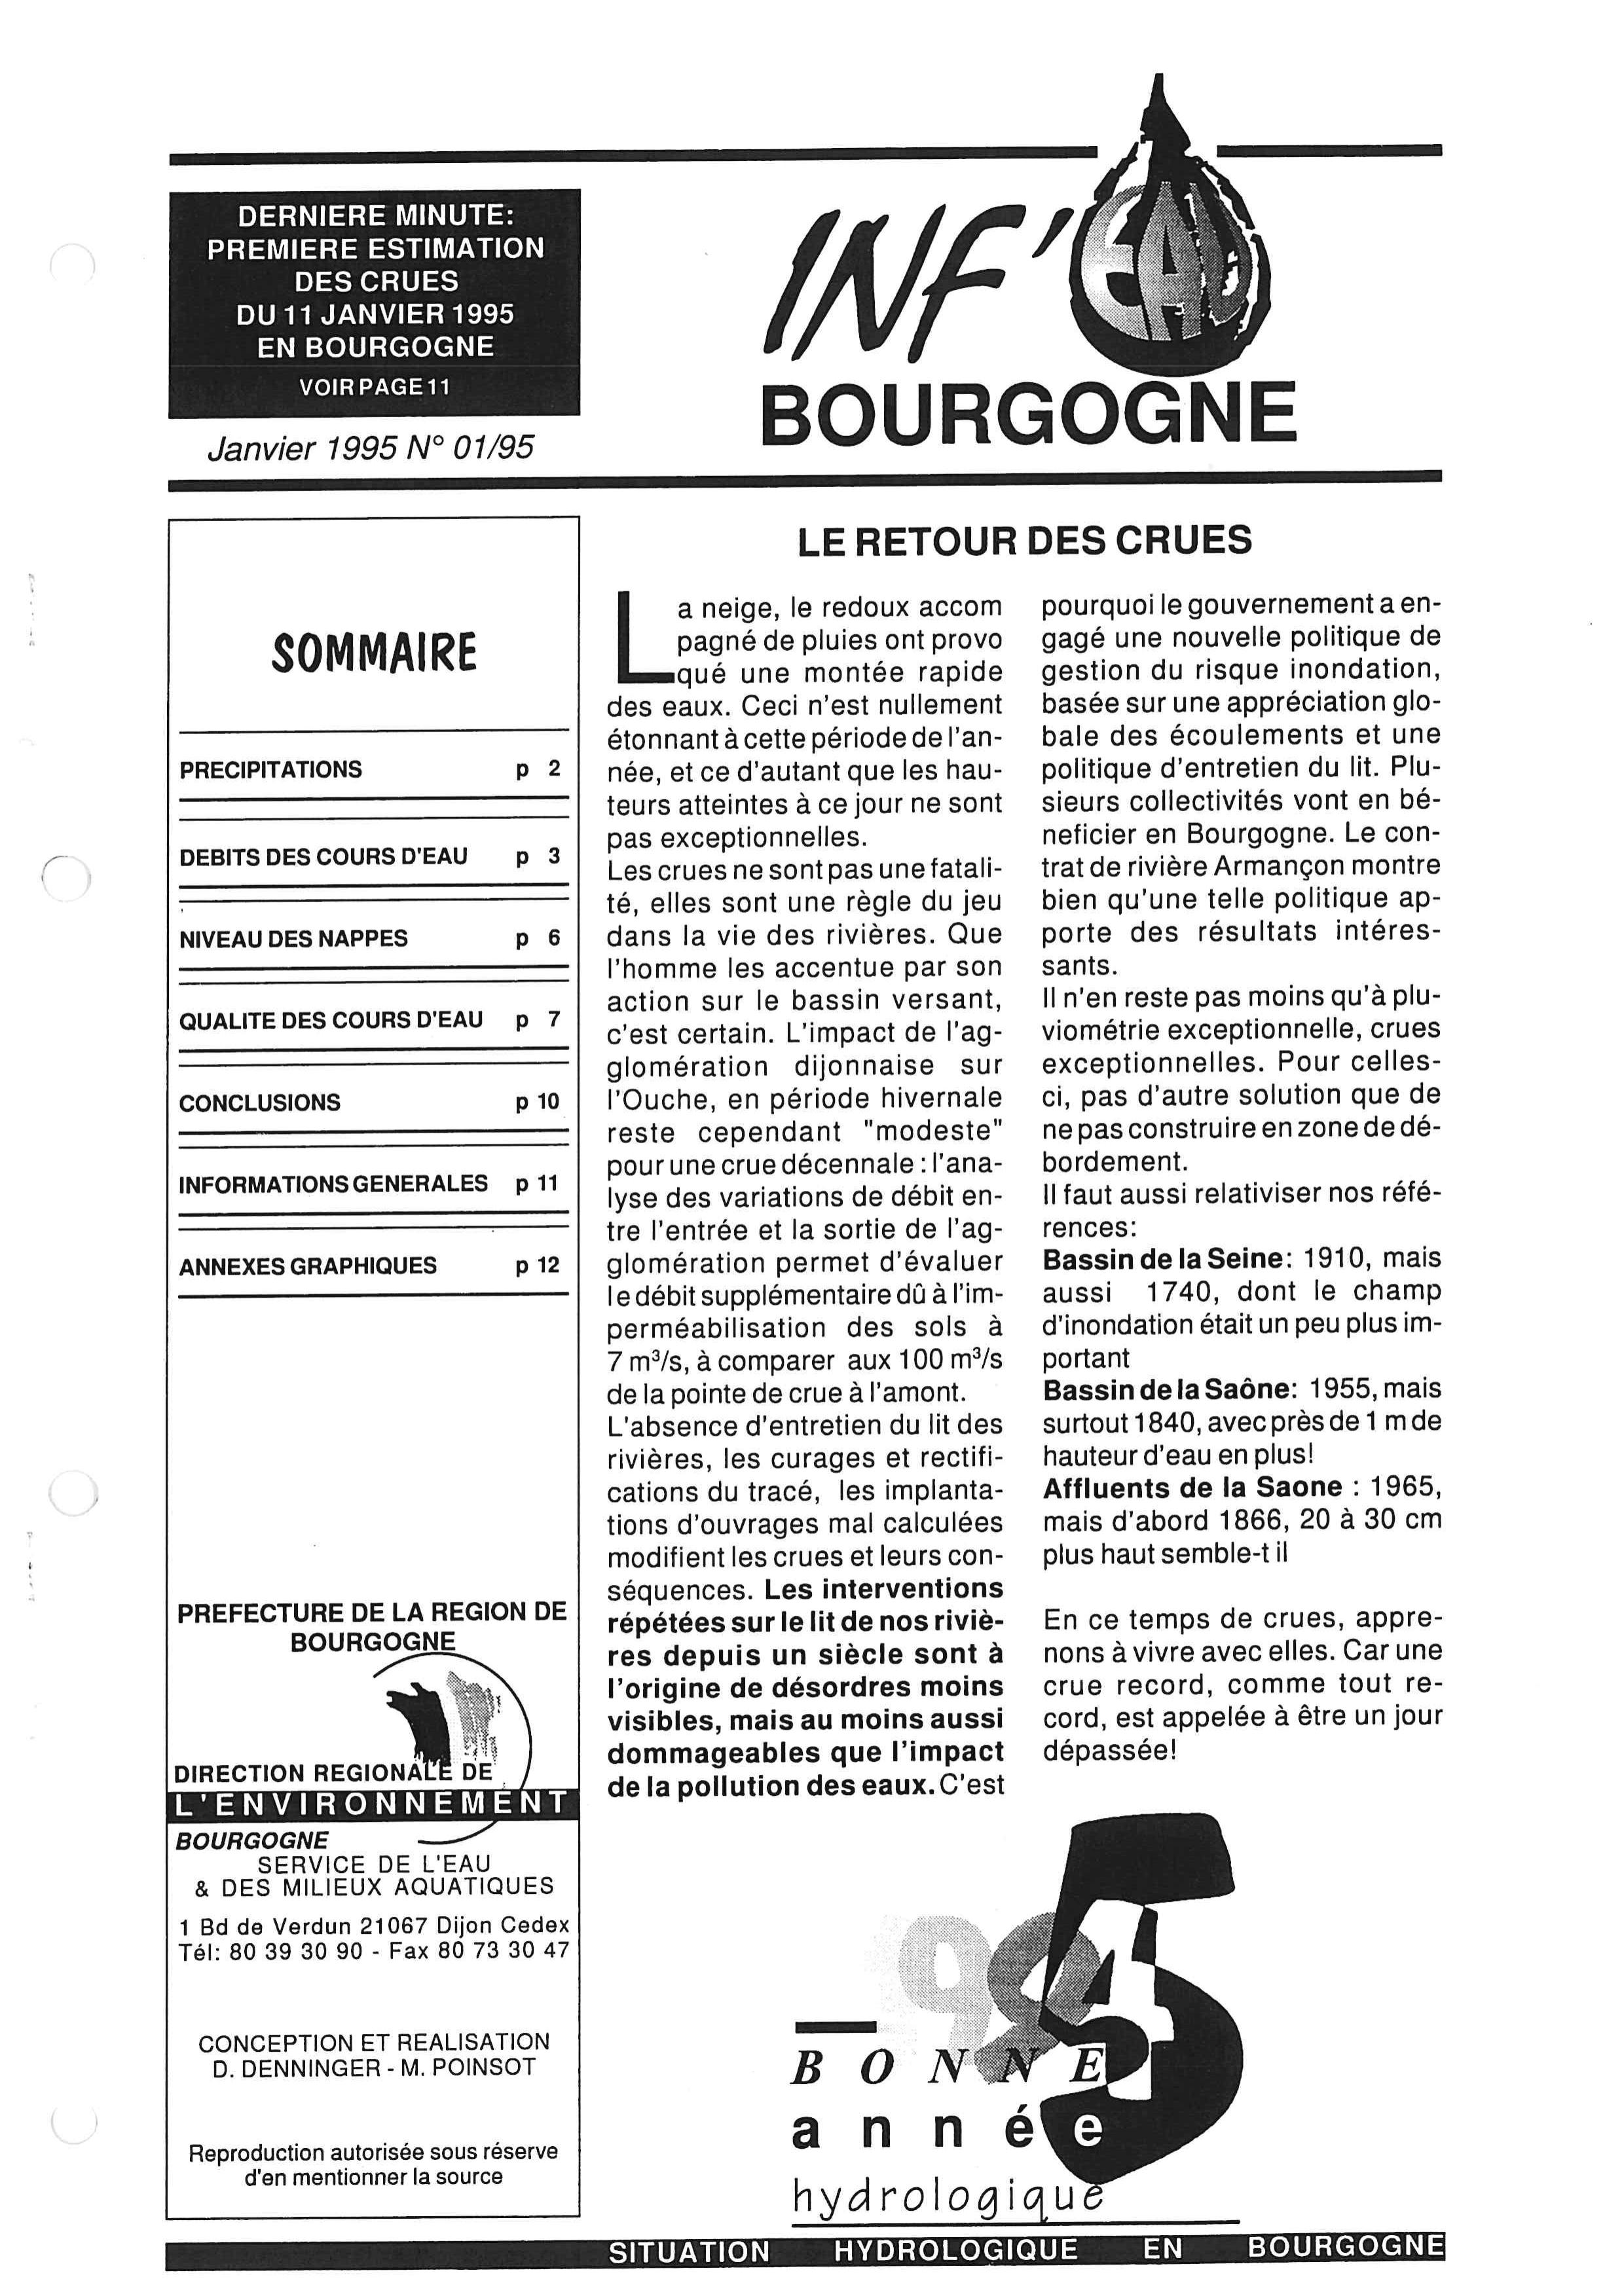 Bulletin hydrologique du mois de décembre 1994